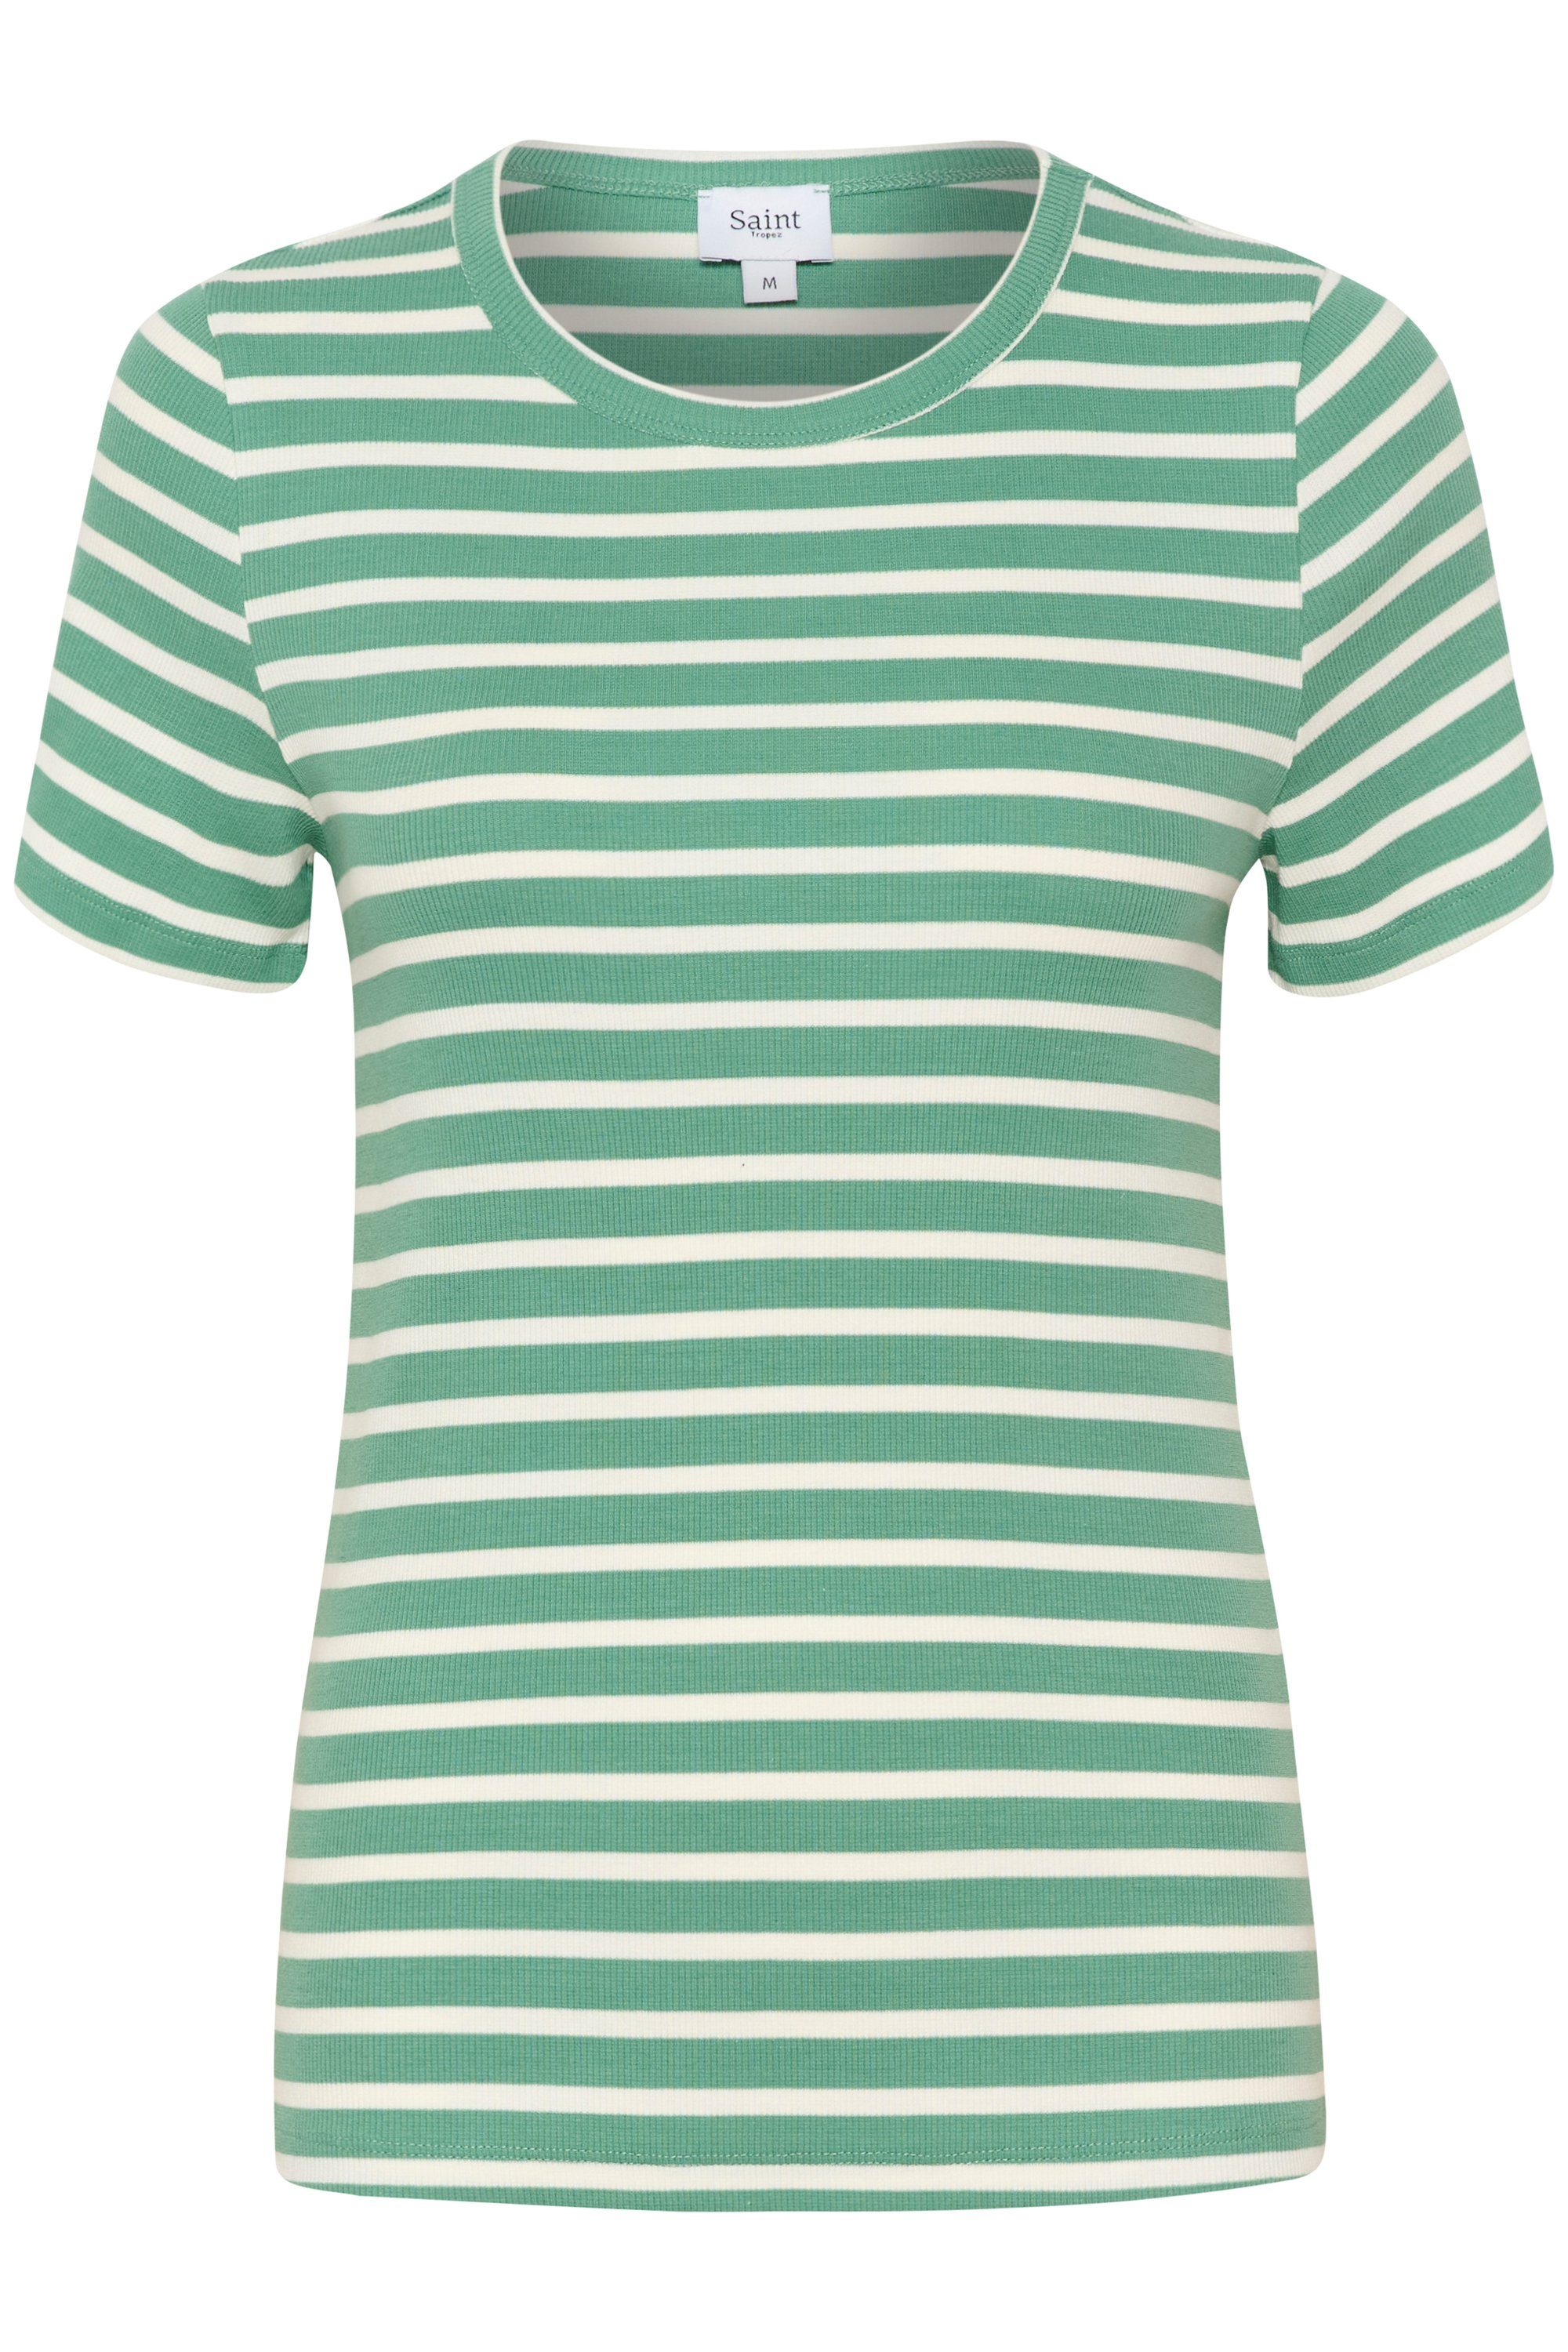 | kaufen Damen online Saint Tropez Shirts OTTO für